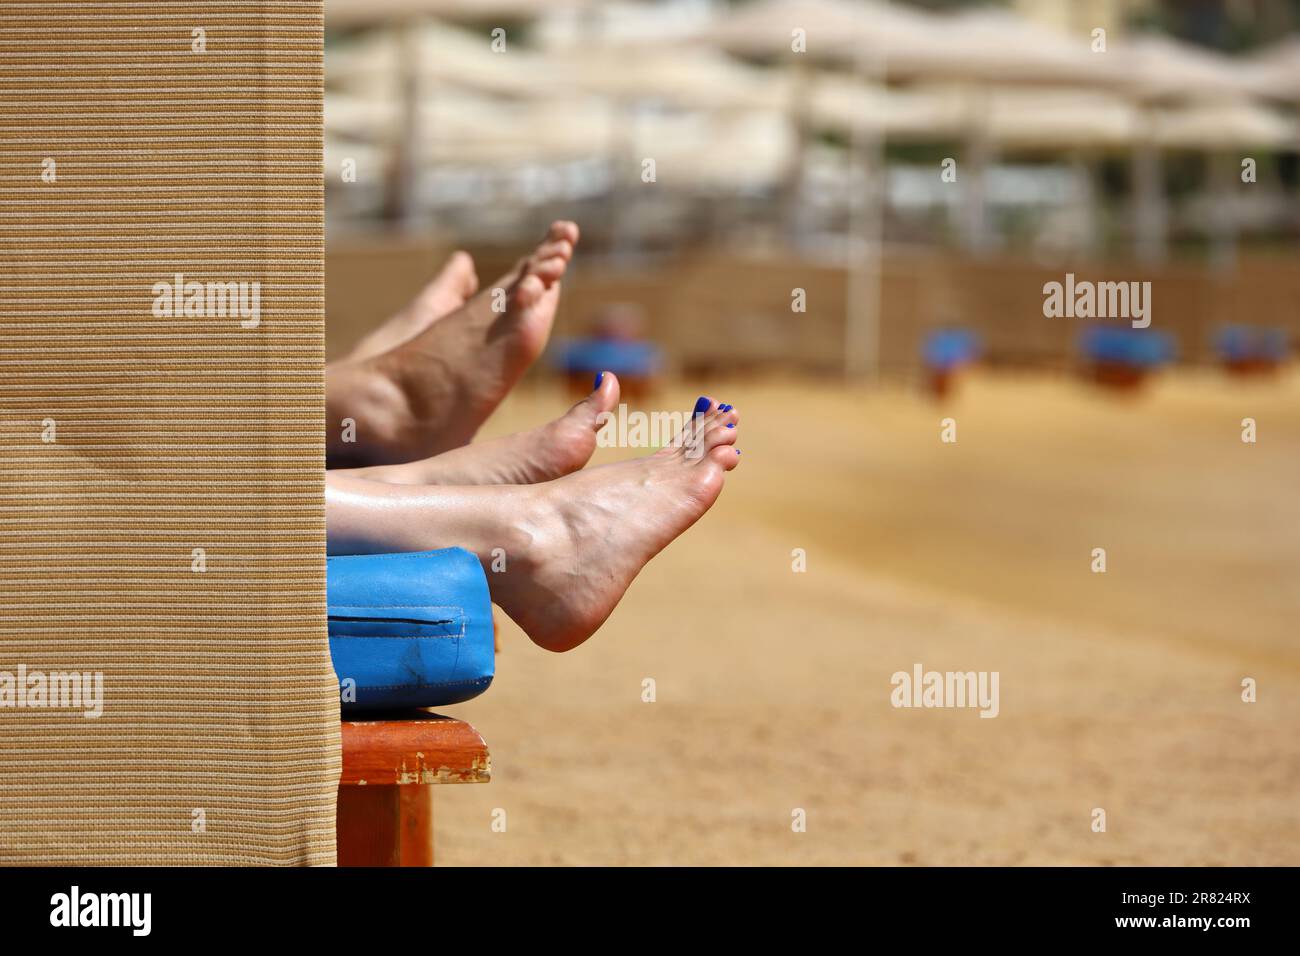 Ein paar Sonnenbräuner im Liegestuhl im Sea Resort. Weibliche und männliche Füße an einem Sandstrand Stockfoto